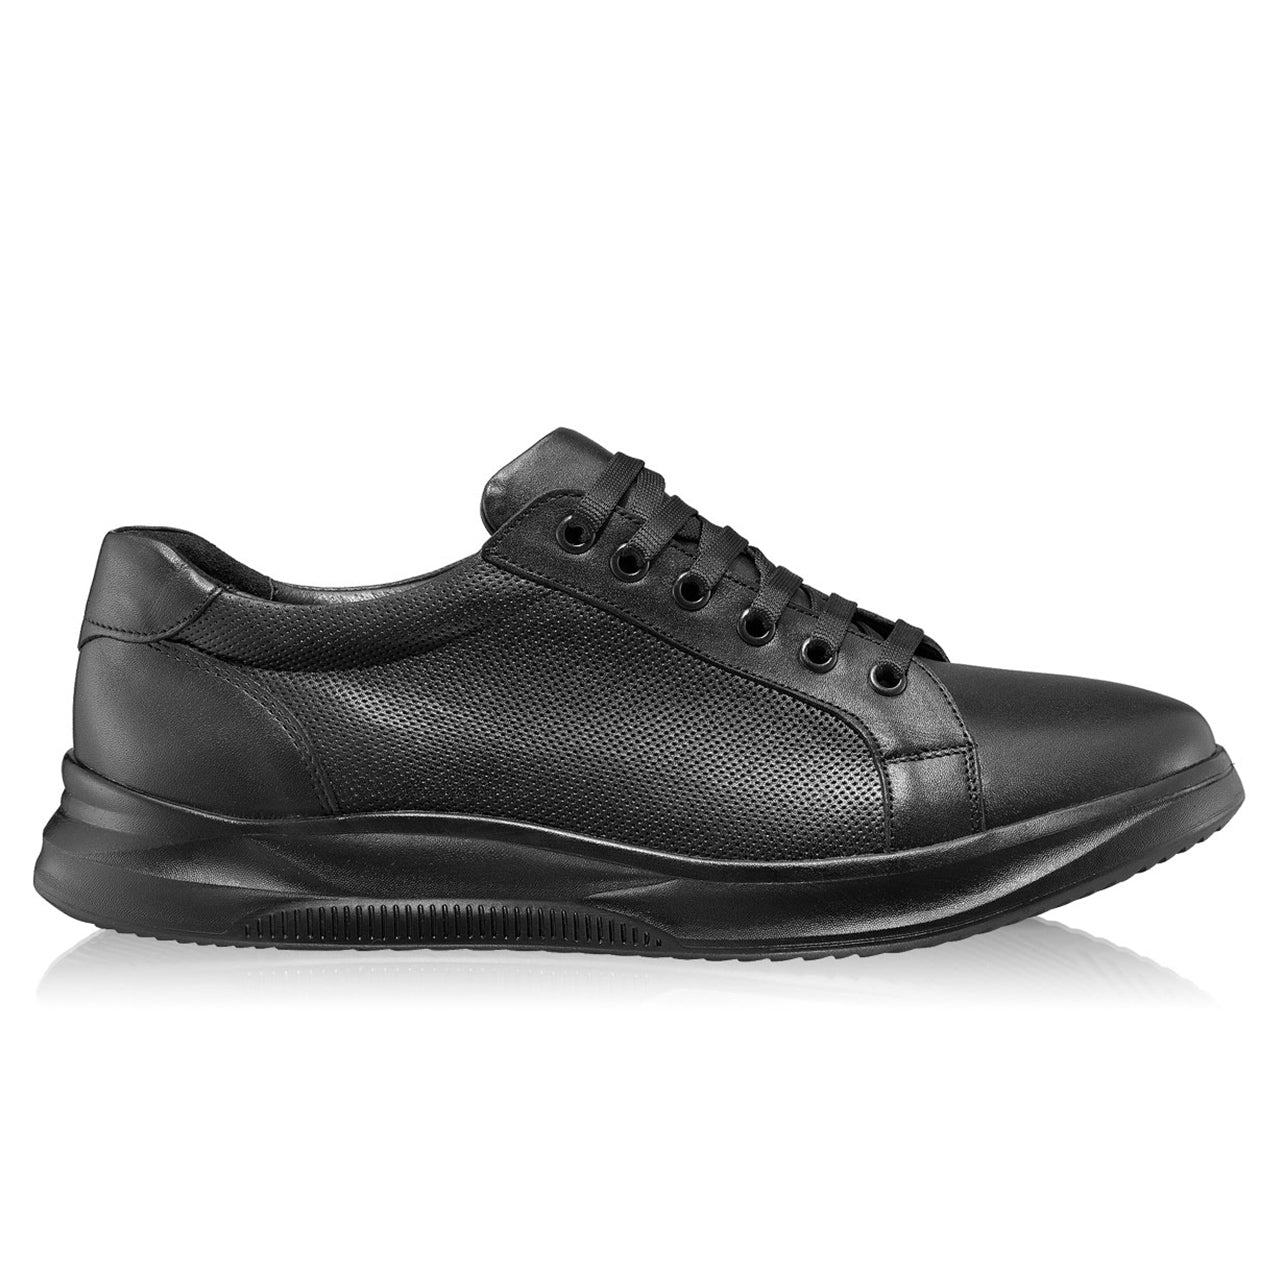 Pantofi barbati casual 1168